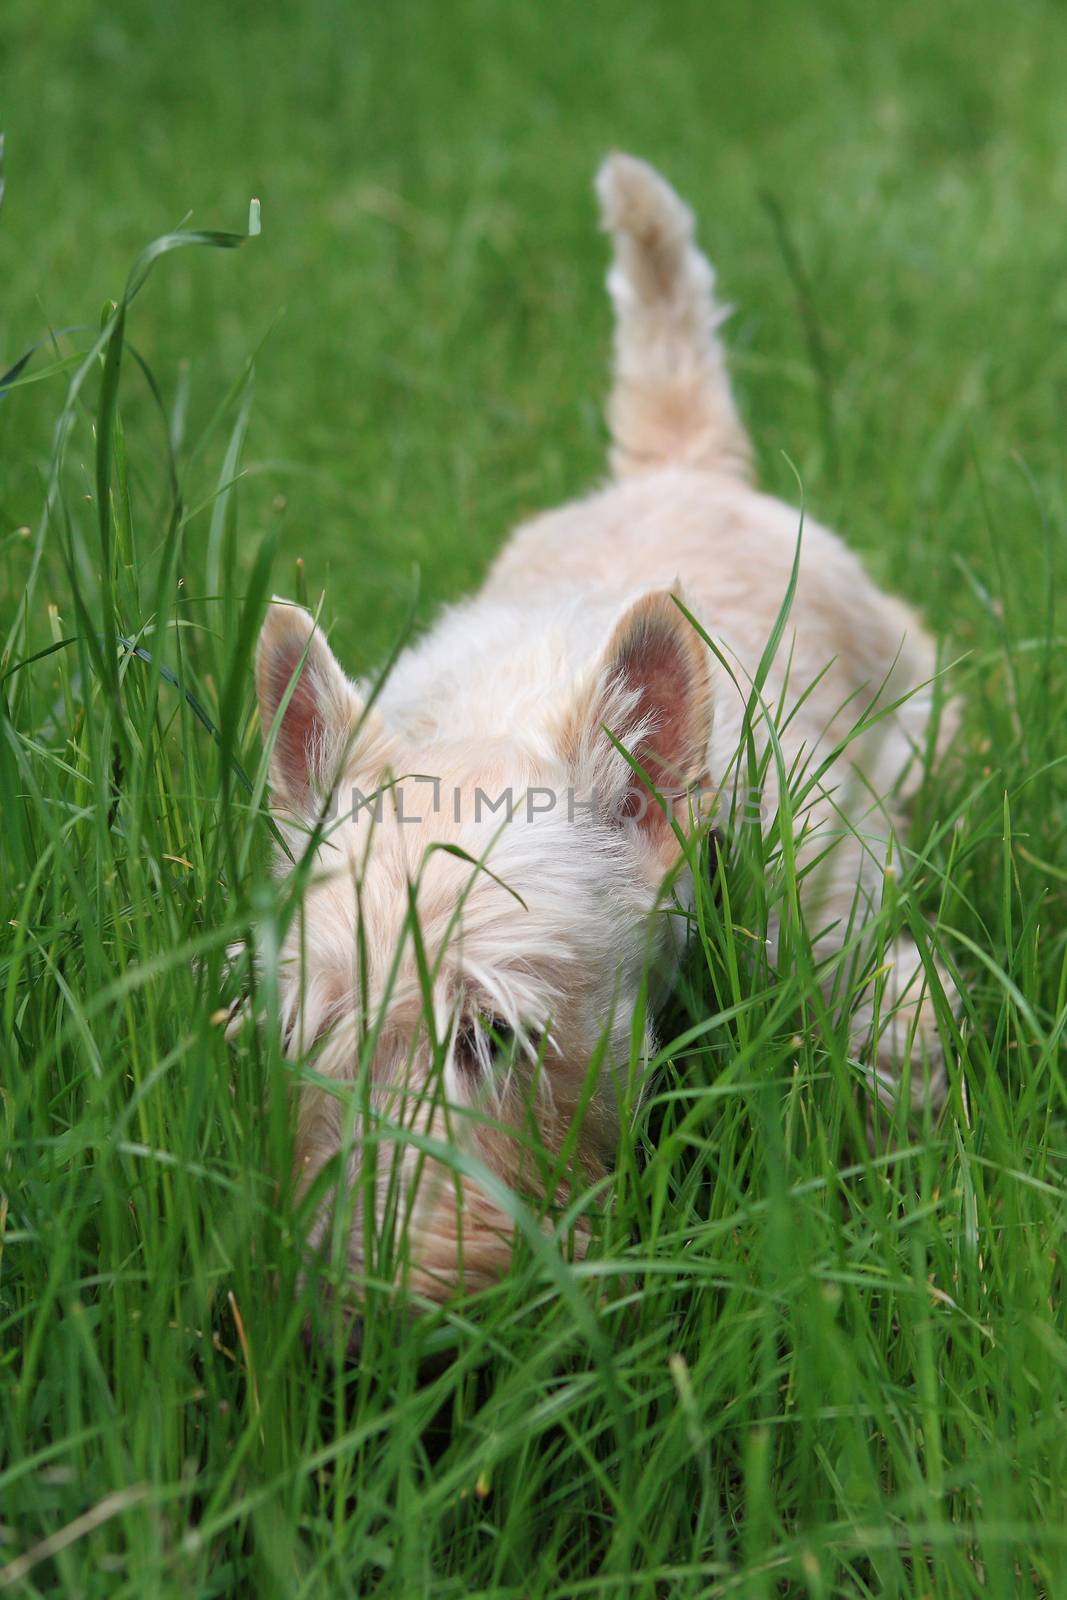 Wheaten Scottish Terrier walks in green grass by cococinema